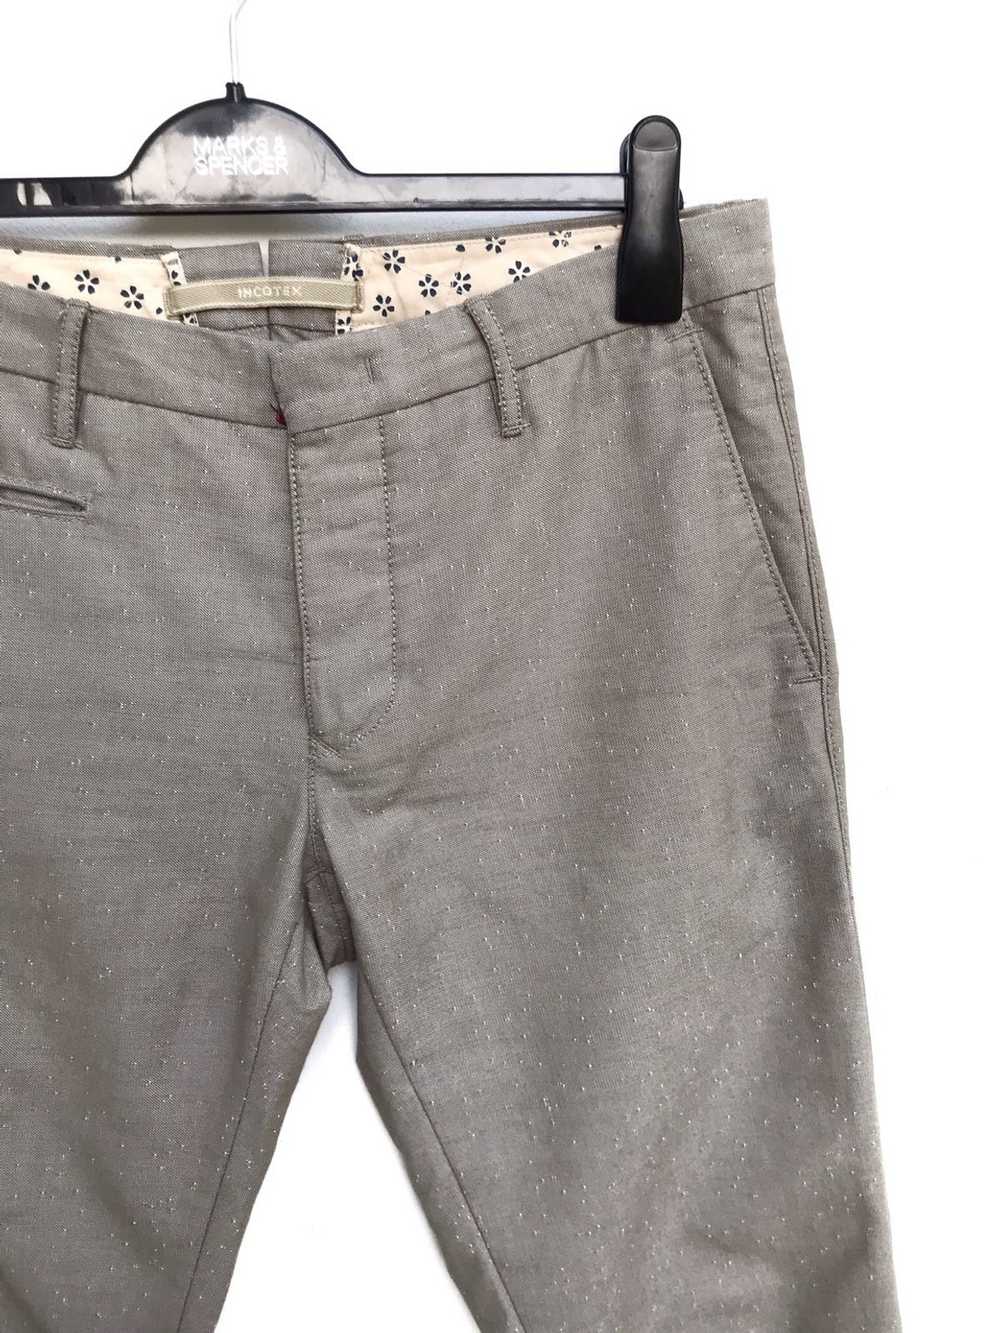 Incotex Incotex Slacks Slim Fit Pants - image 4